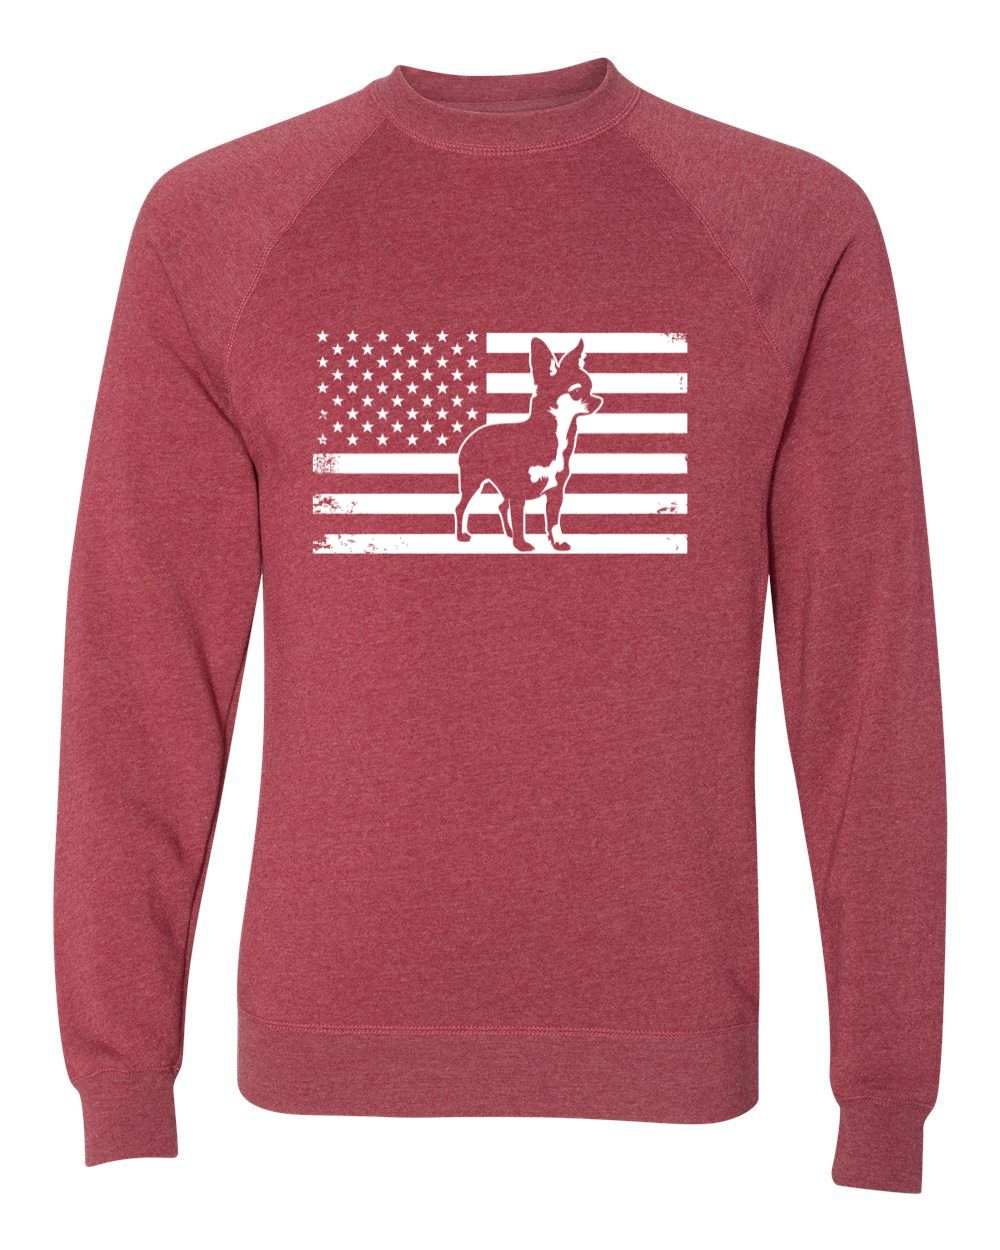 Chihuahua USA Flag Sweatshirt